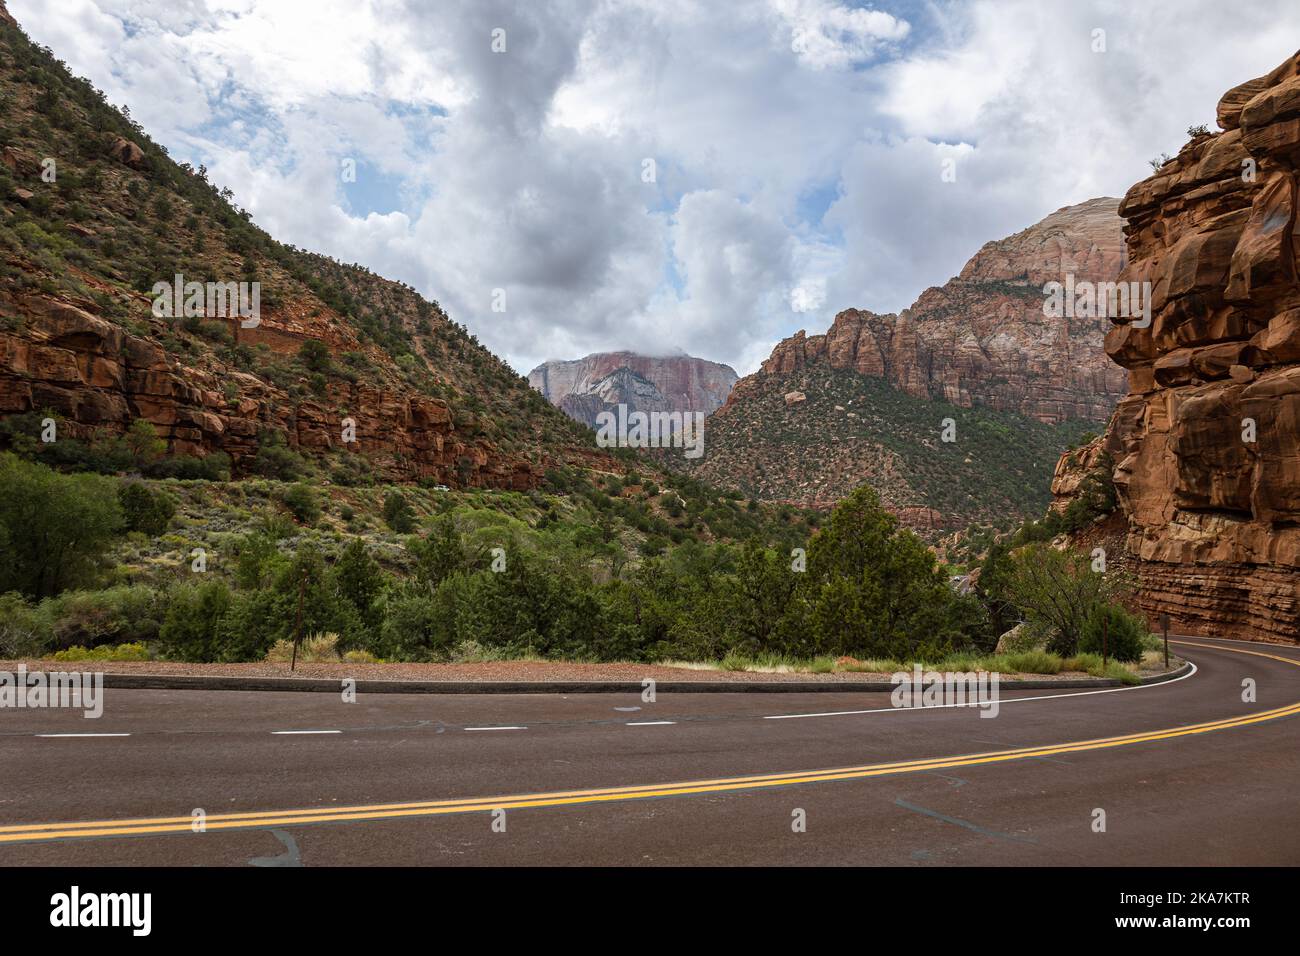 Percorso turistico attraverso l'autostrada per il parco nazionale di Zion nello Utah, con splendide vedute delle montagne e della vegetazione, USA Foto Stock